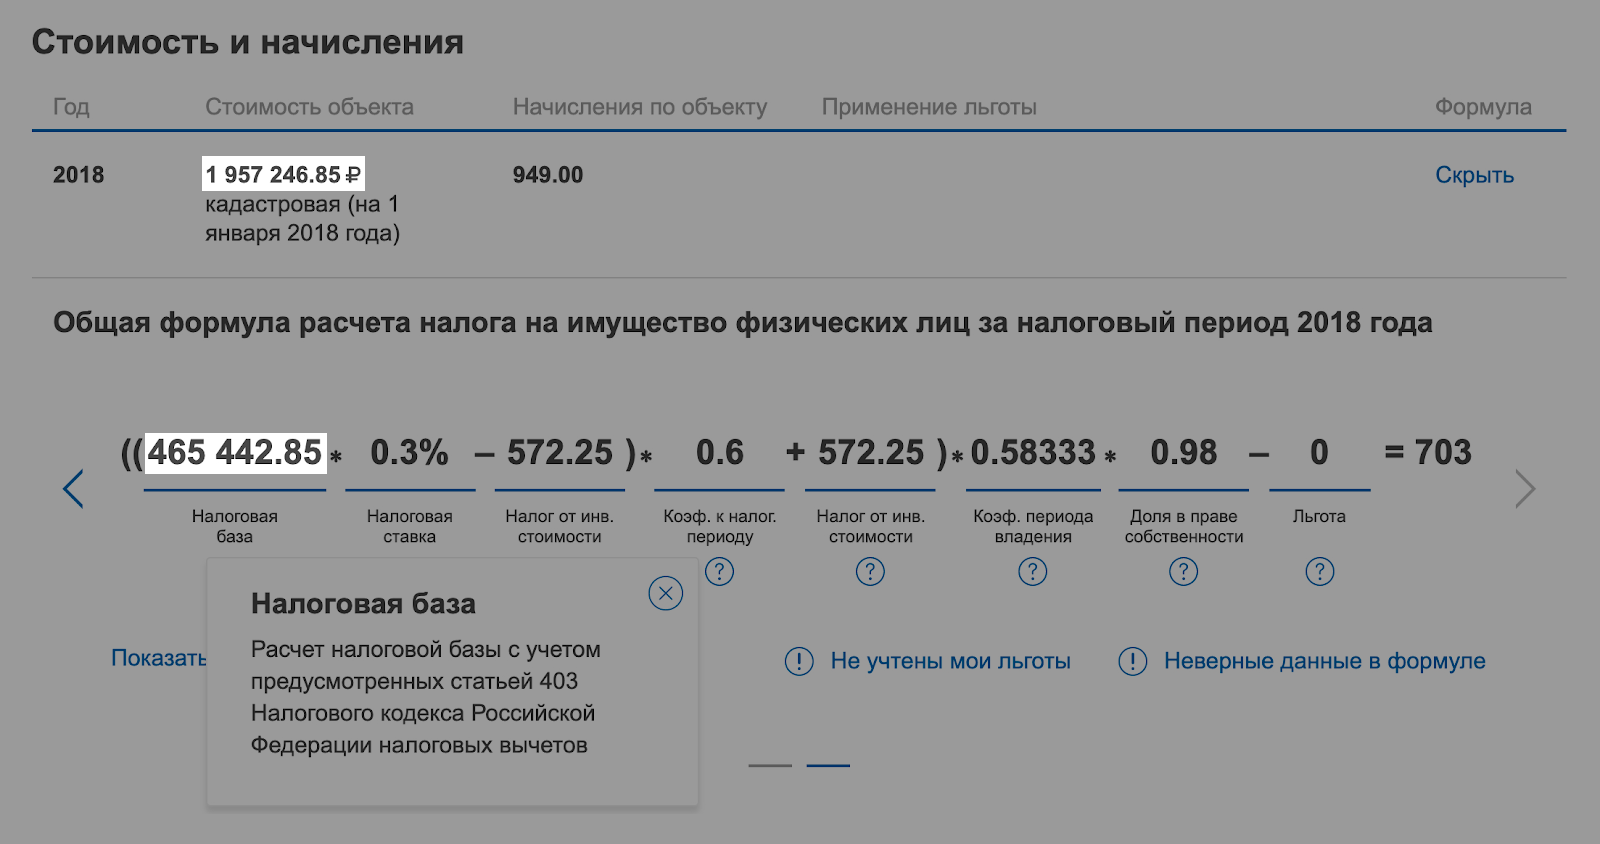 Кадастровая стоимость — почти 2 млн рублей, а налоговая база — 465 тысяч, потому что стоимость 50 м² не учли: это вычет